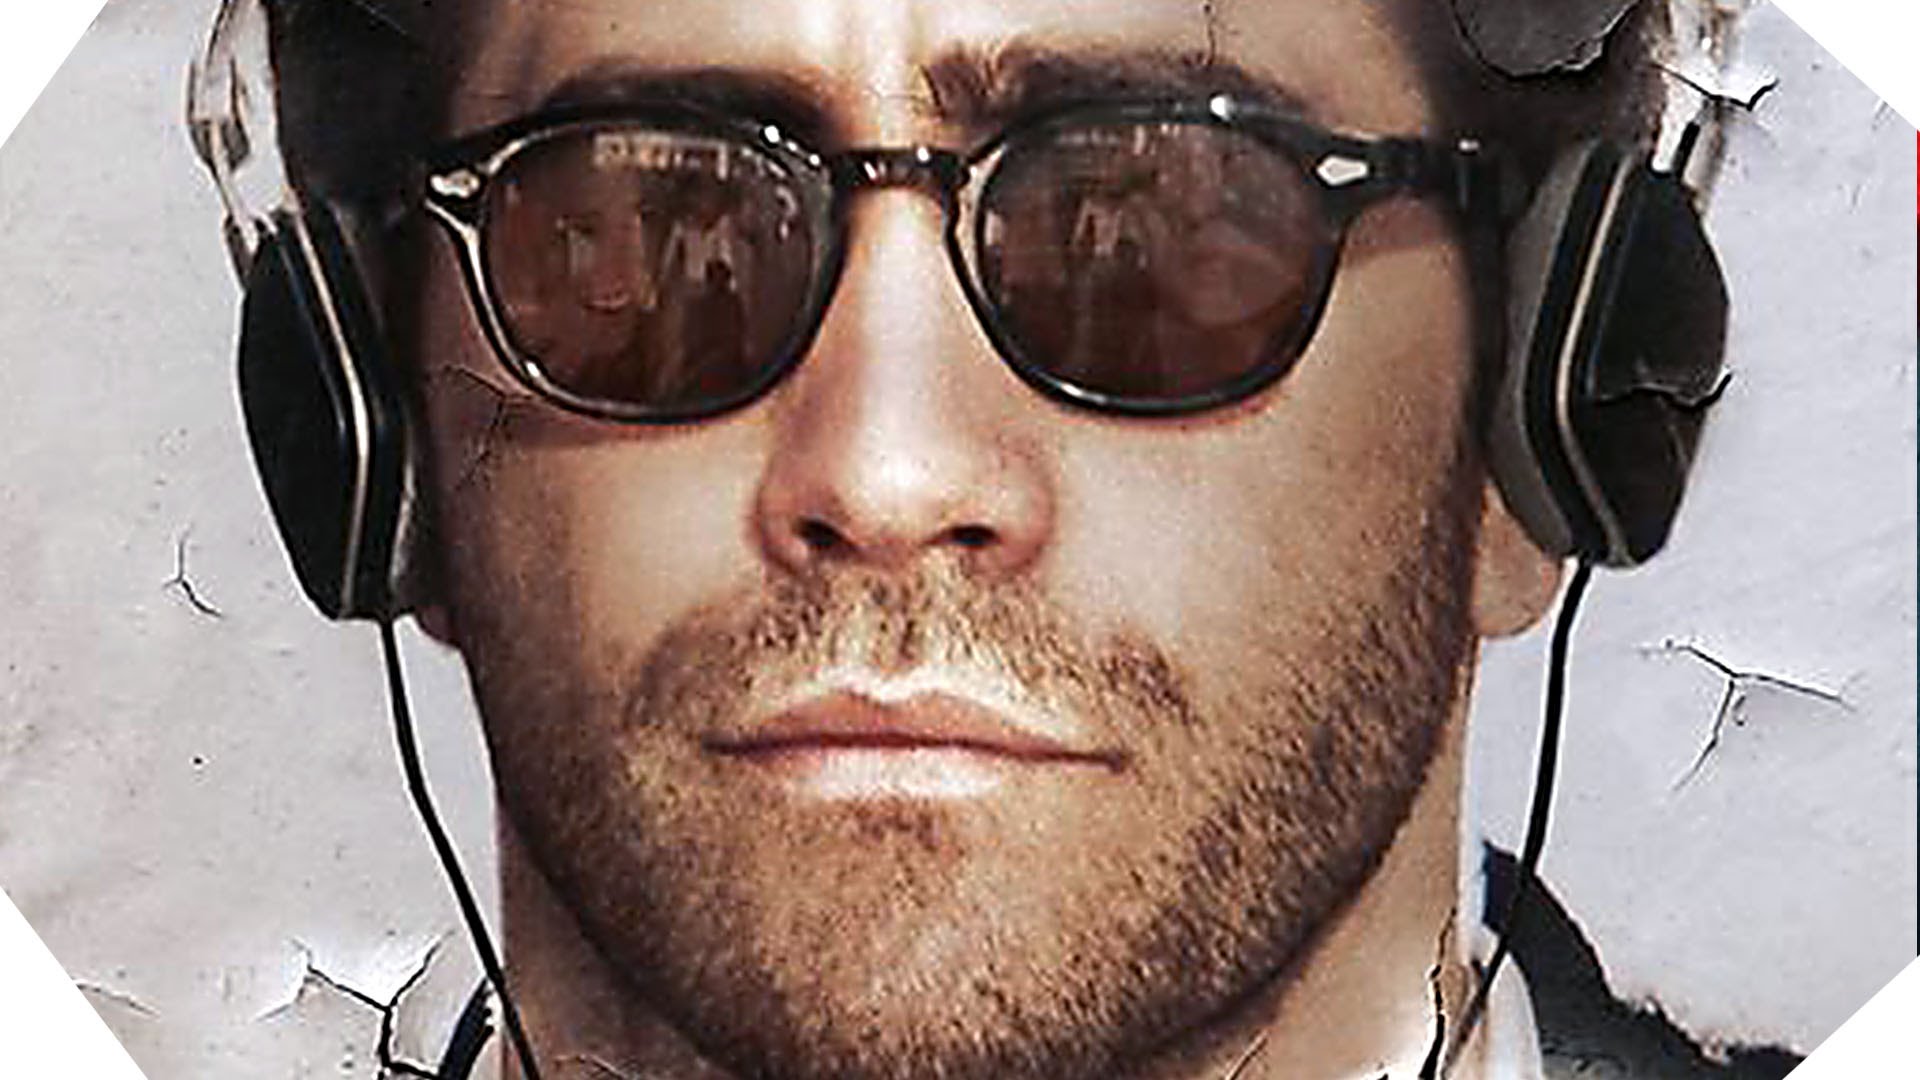 DEMOLITION - Film Jake Gyllenhaal Jean-Marc Vallée movie Image du film 5 - Go with the Blog